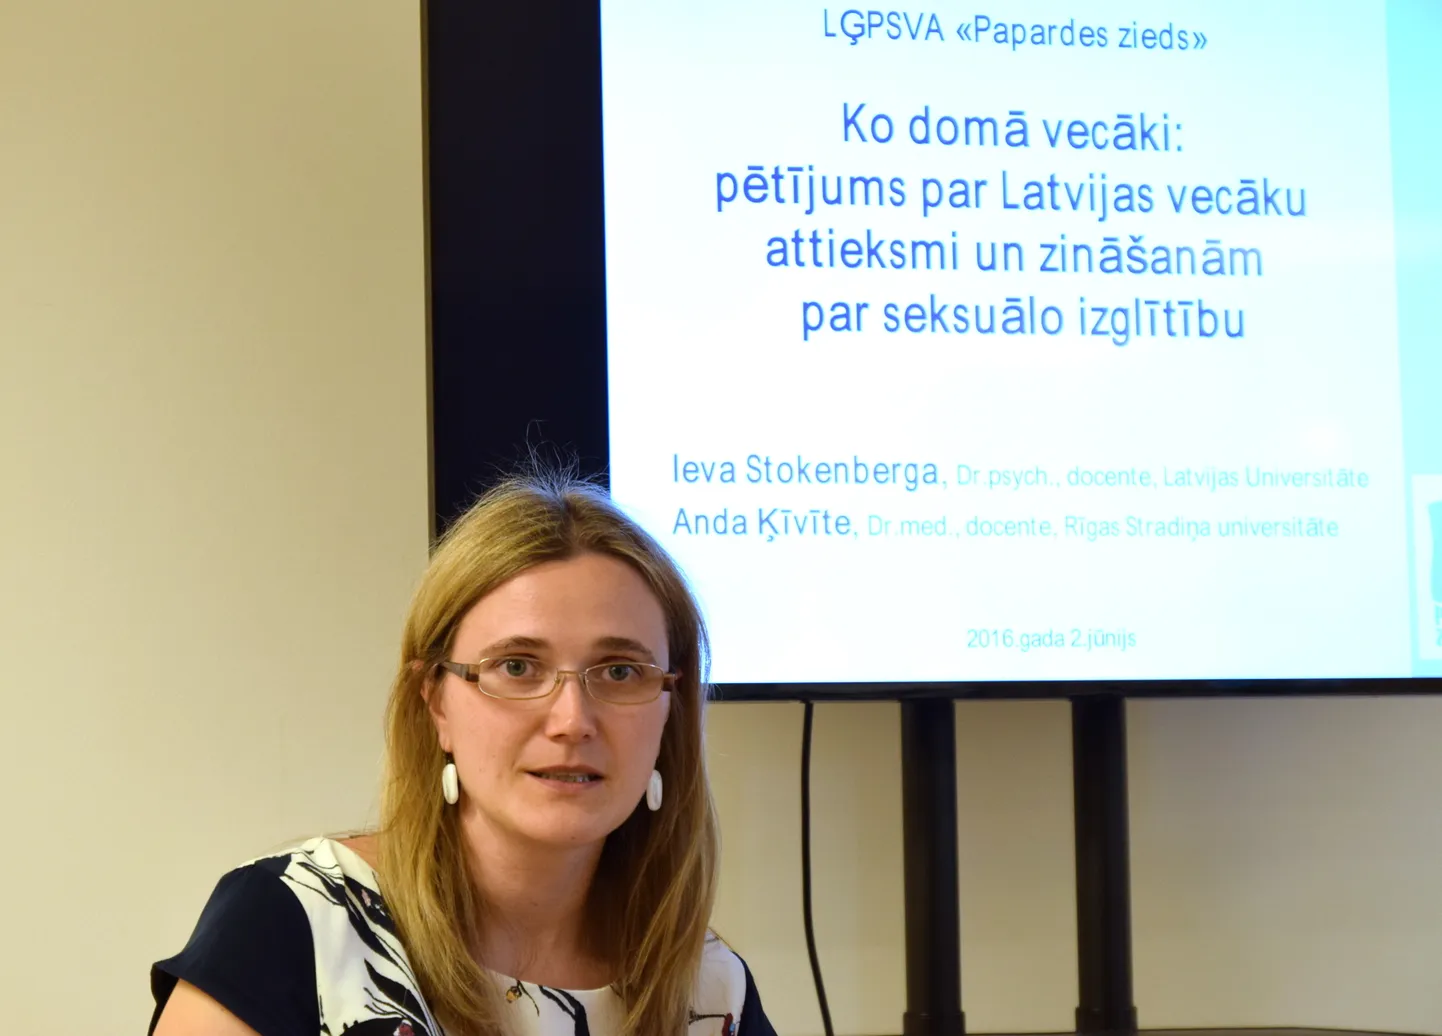 Latvijas Universitātes psiholoģijas nodaļas docente Ieva Stokenberga piedalās pētījuma par bērnu vecumam neatbilstošas seksuāla rakstura informācijas pieejamību prezentācijā.